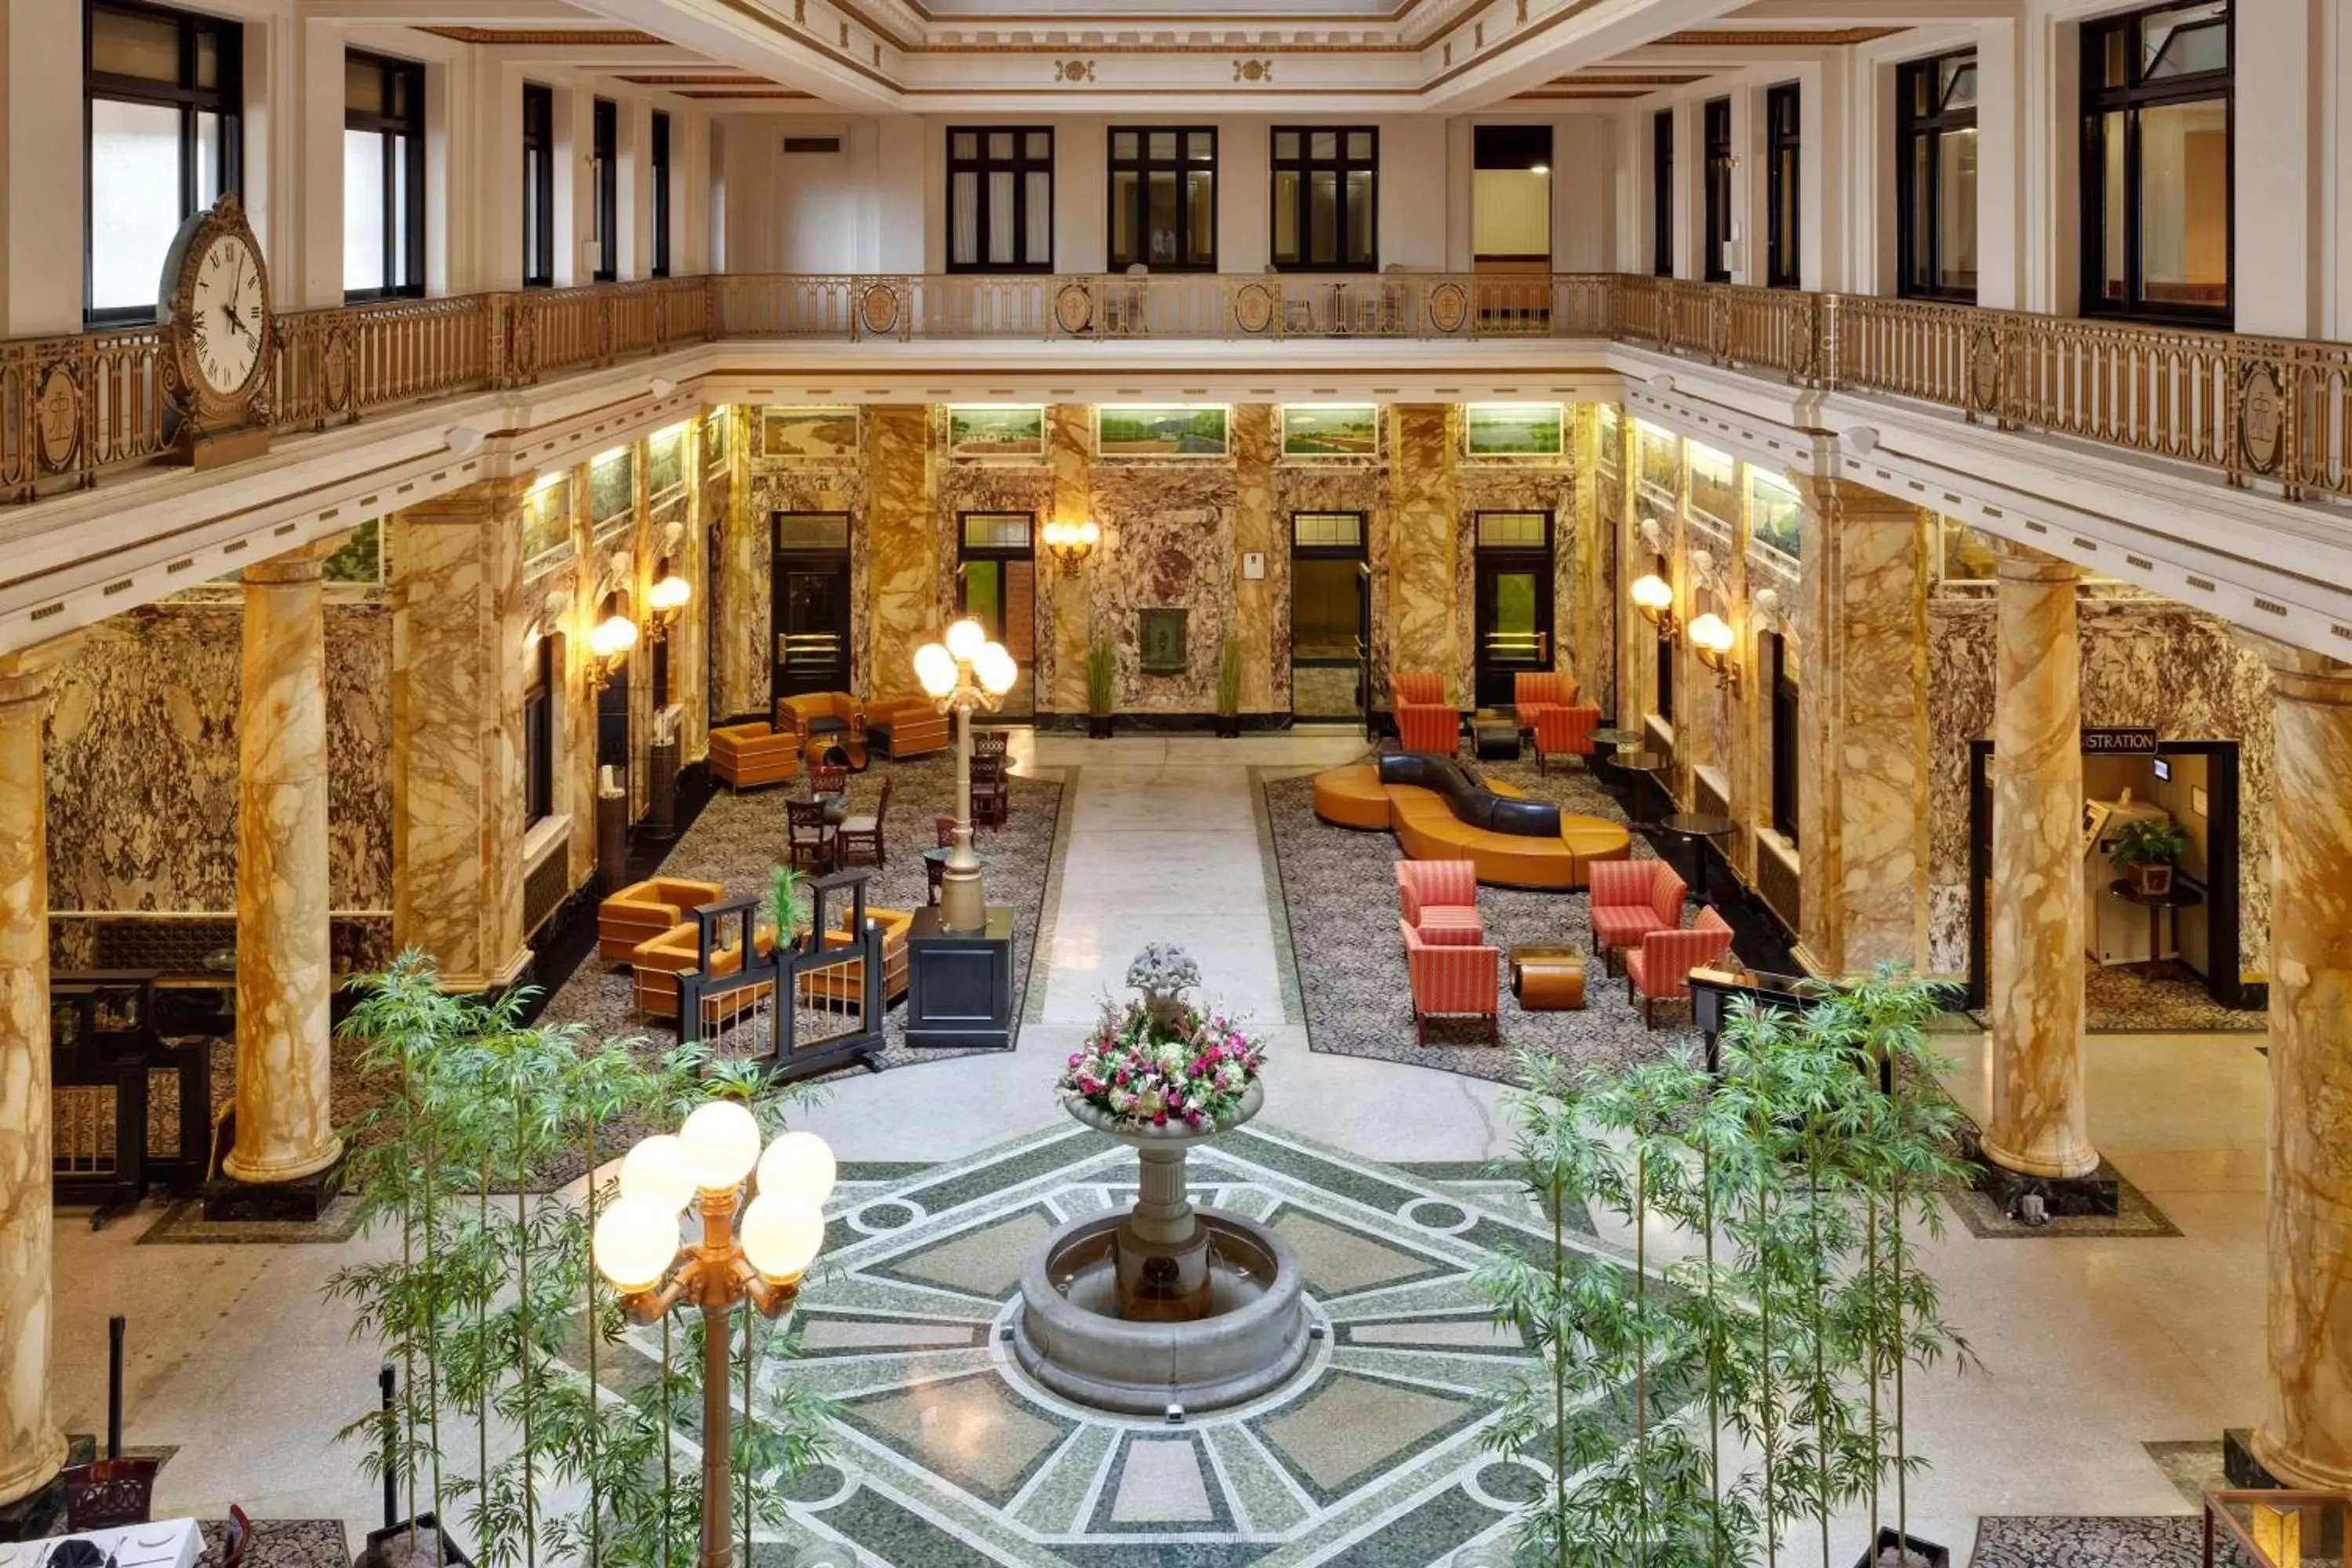 Lobby or reception in Radisson Lackawanna Station Hotel Scranton